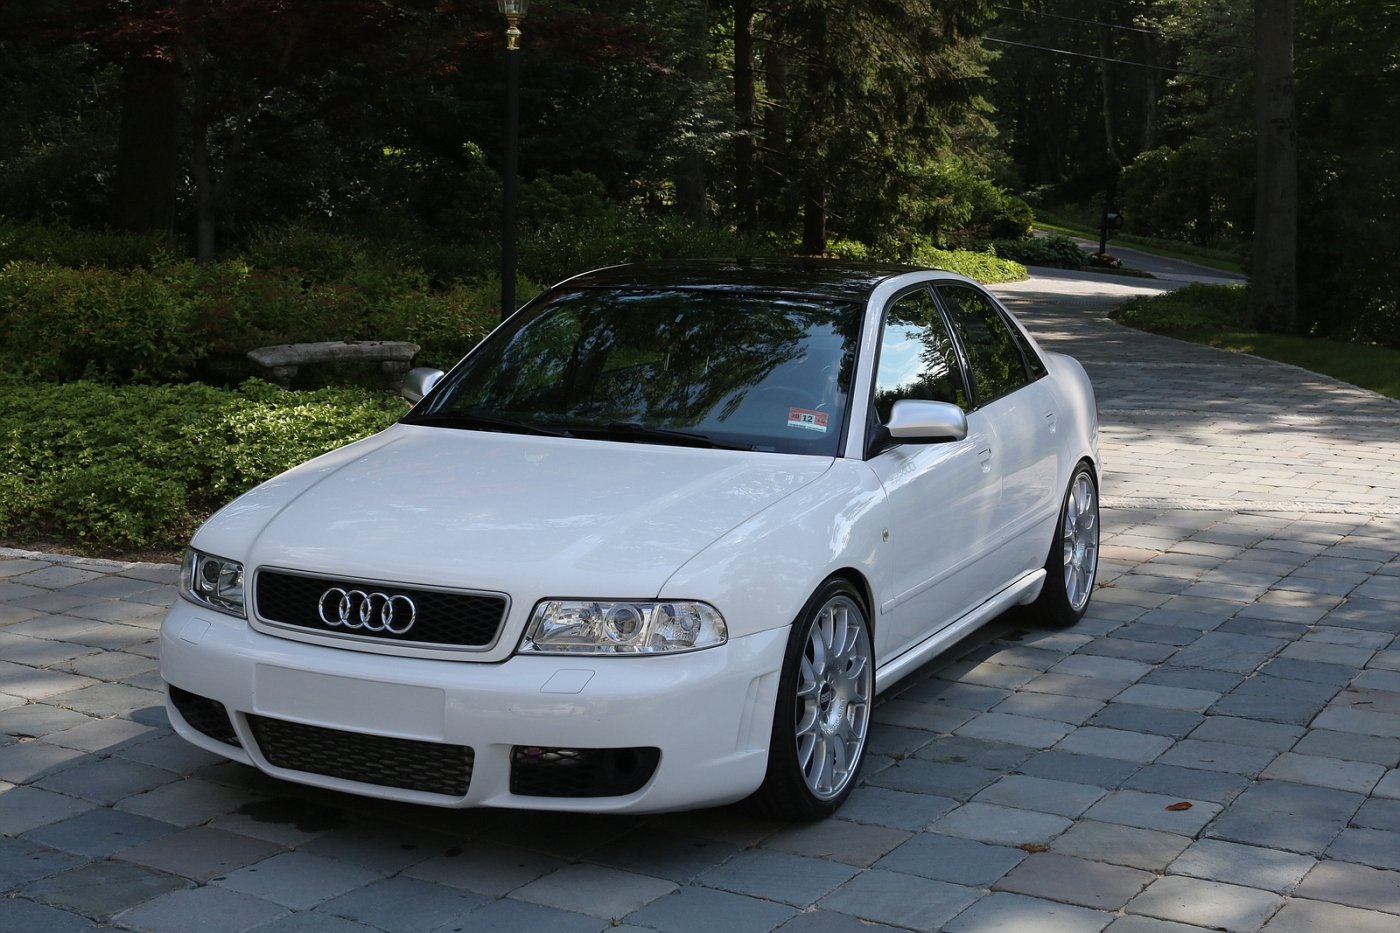 Ауди а4 б5 седан купить. Audi a4 b5 1999. Audi a4 b5 1995. Audi a4 b5 белая. Audi a4 b5 2001.